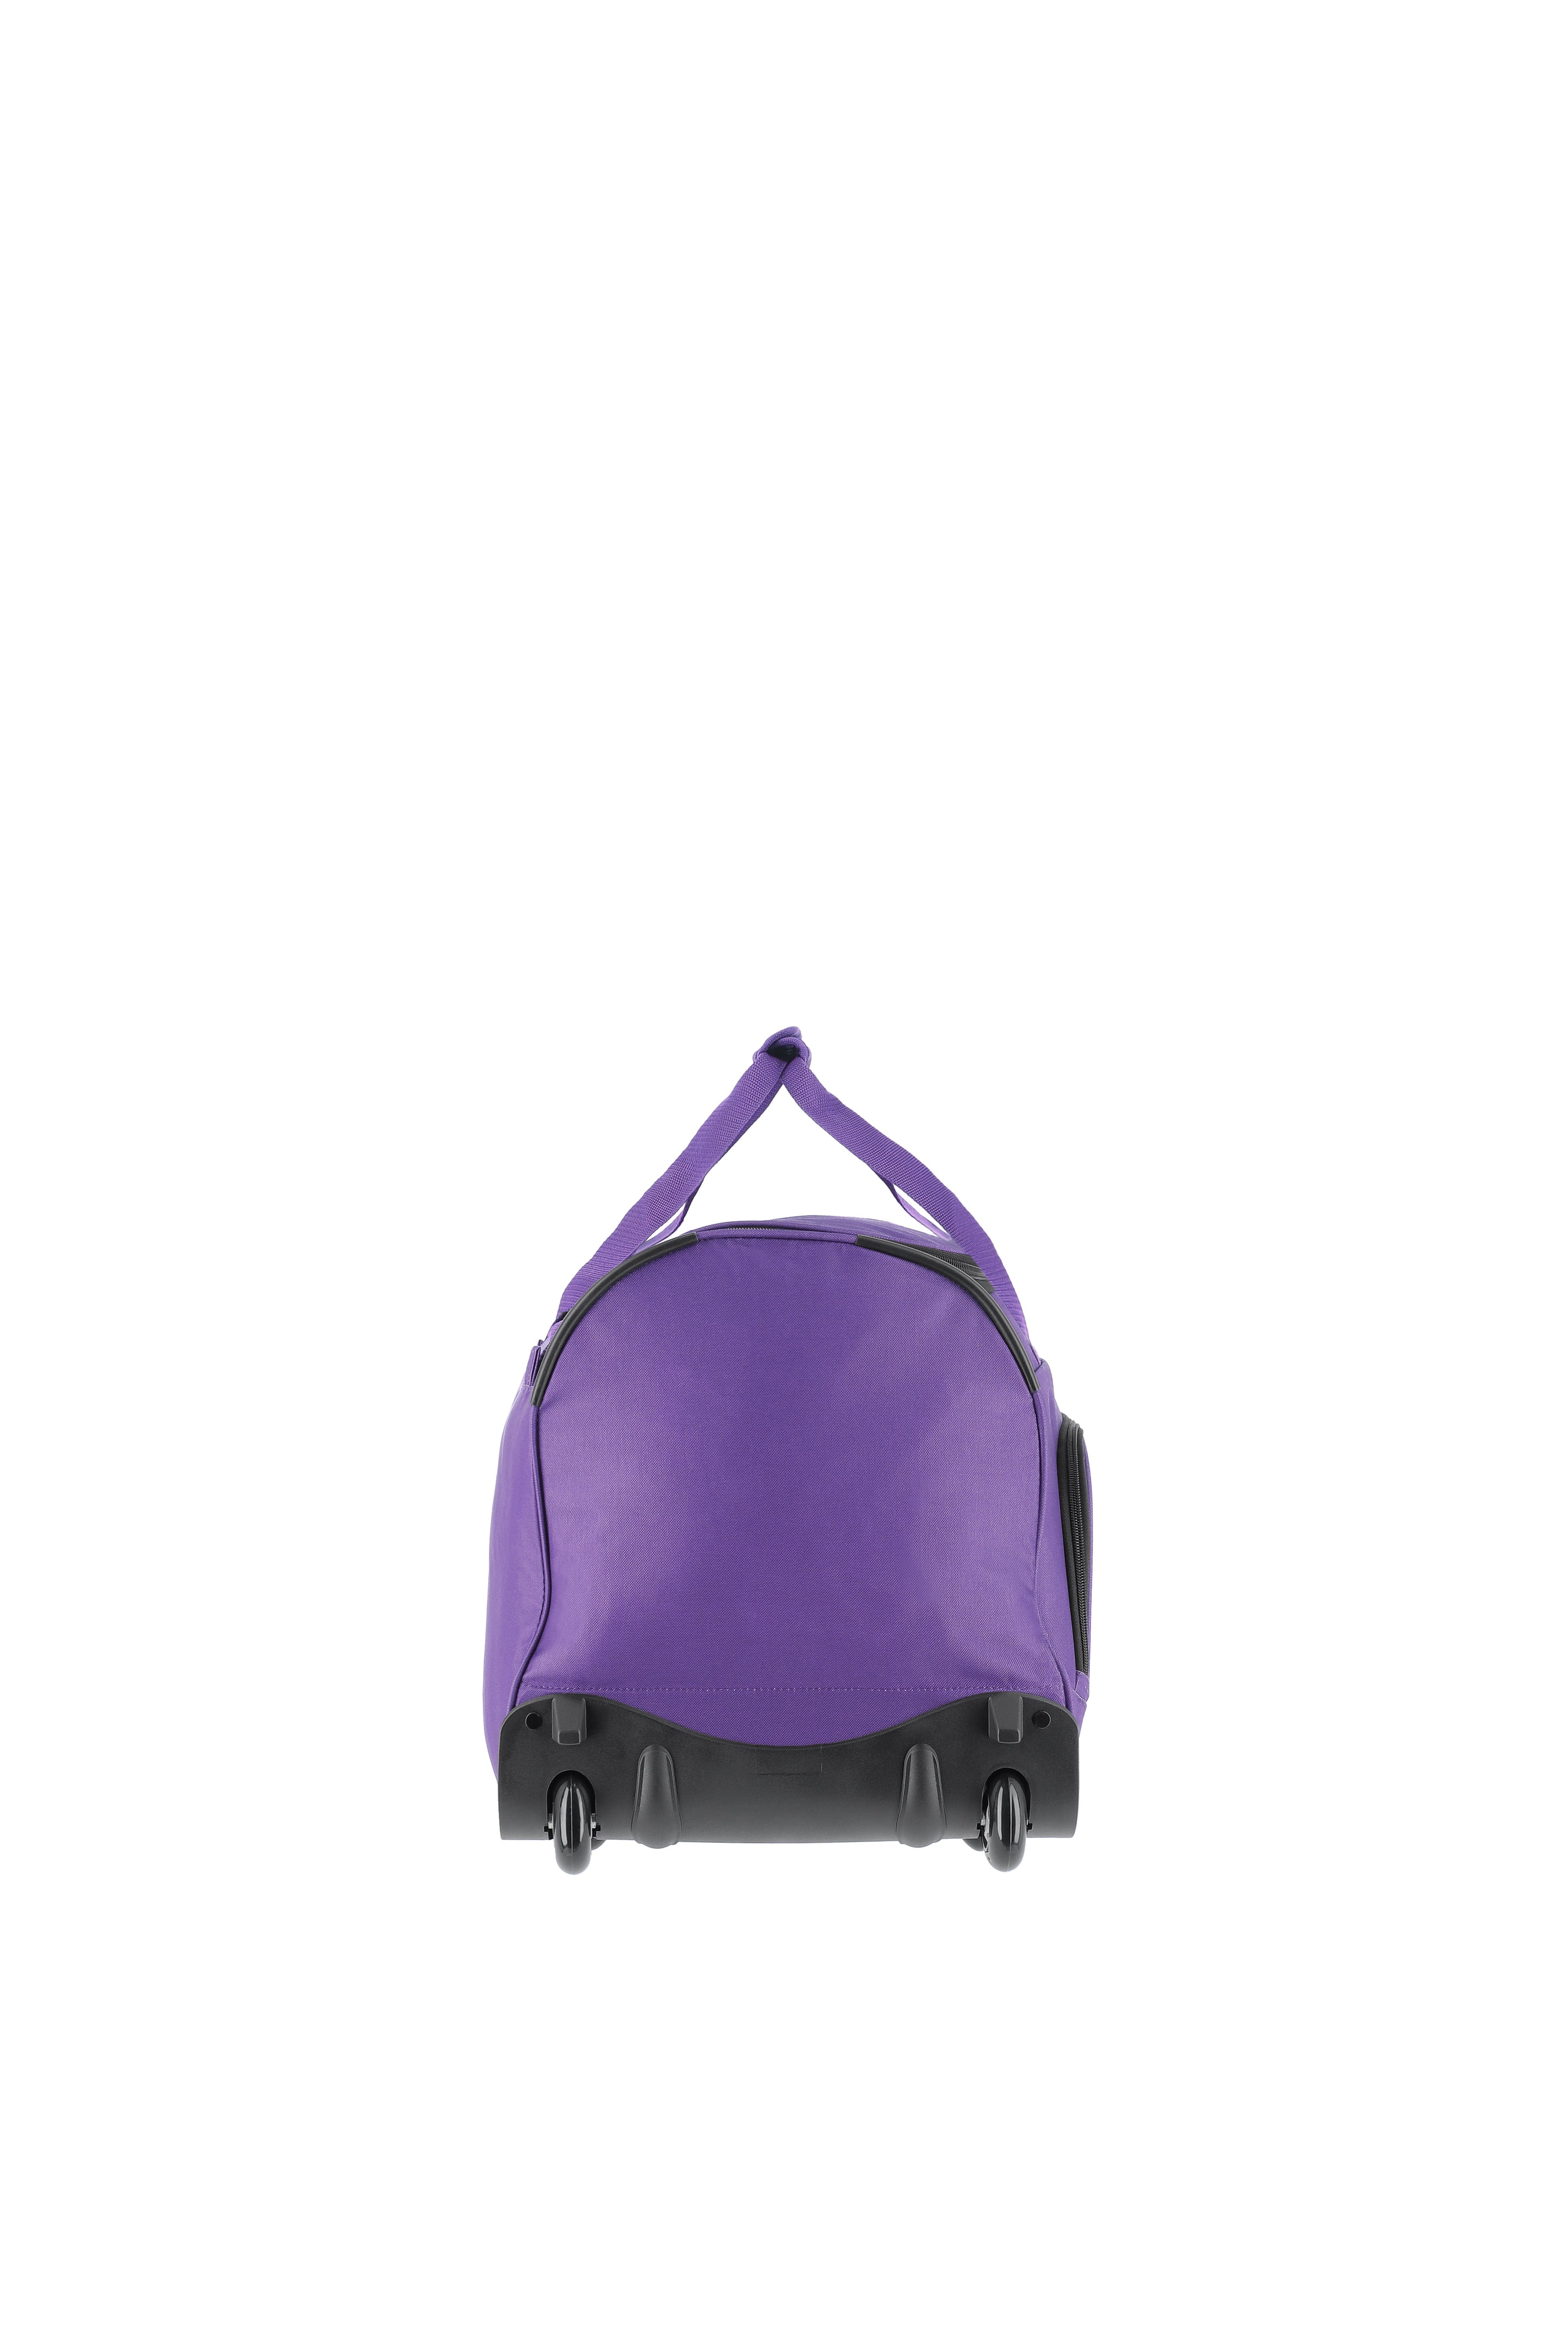 Basics Fresh Trolley Travel Bag lilac